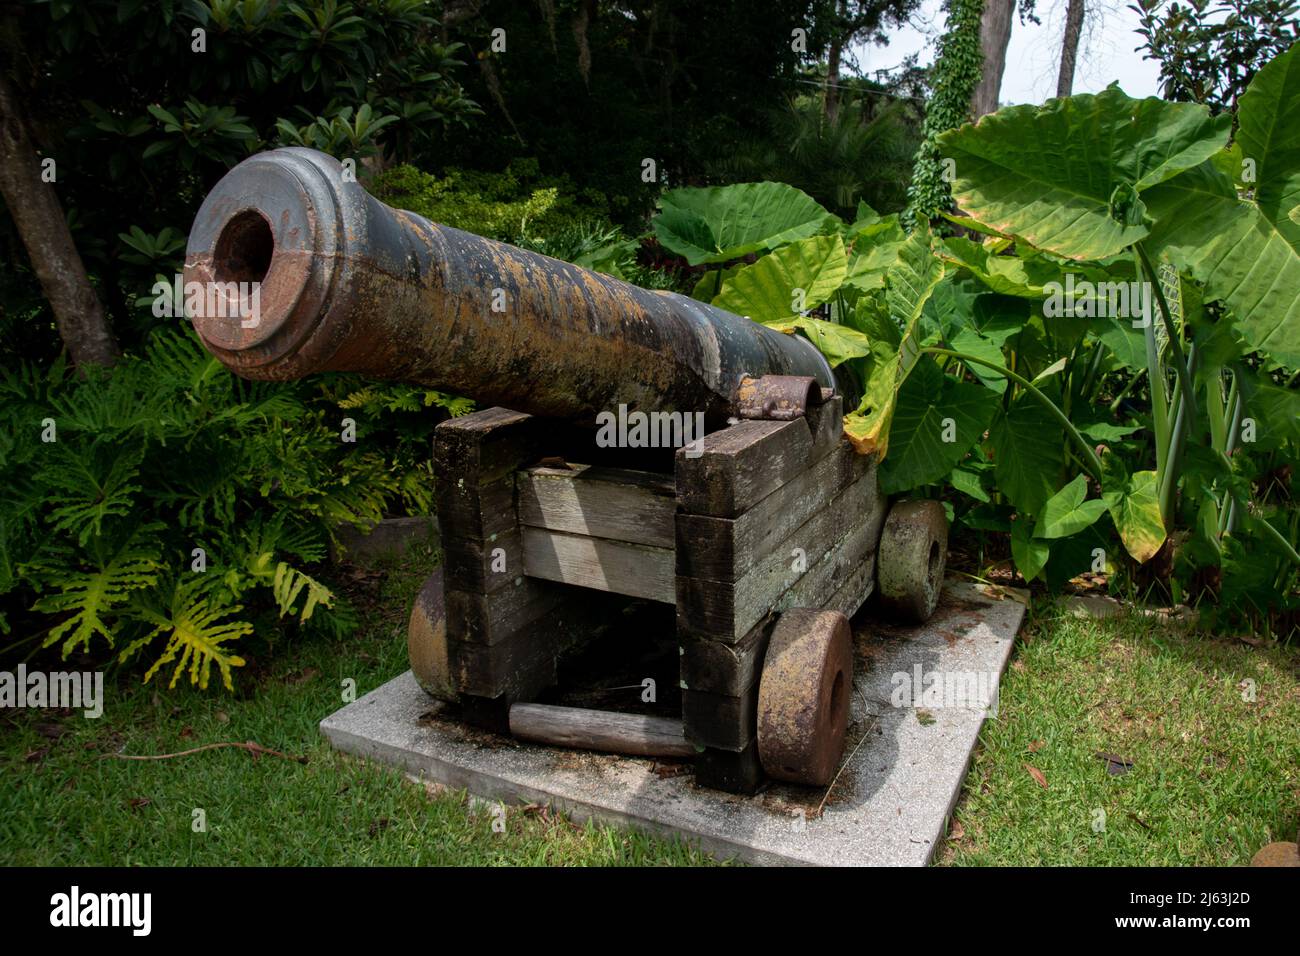 Eine alte spanische Kanone, die während der Kolonisation Floridas verwendet wurde Stockfoto